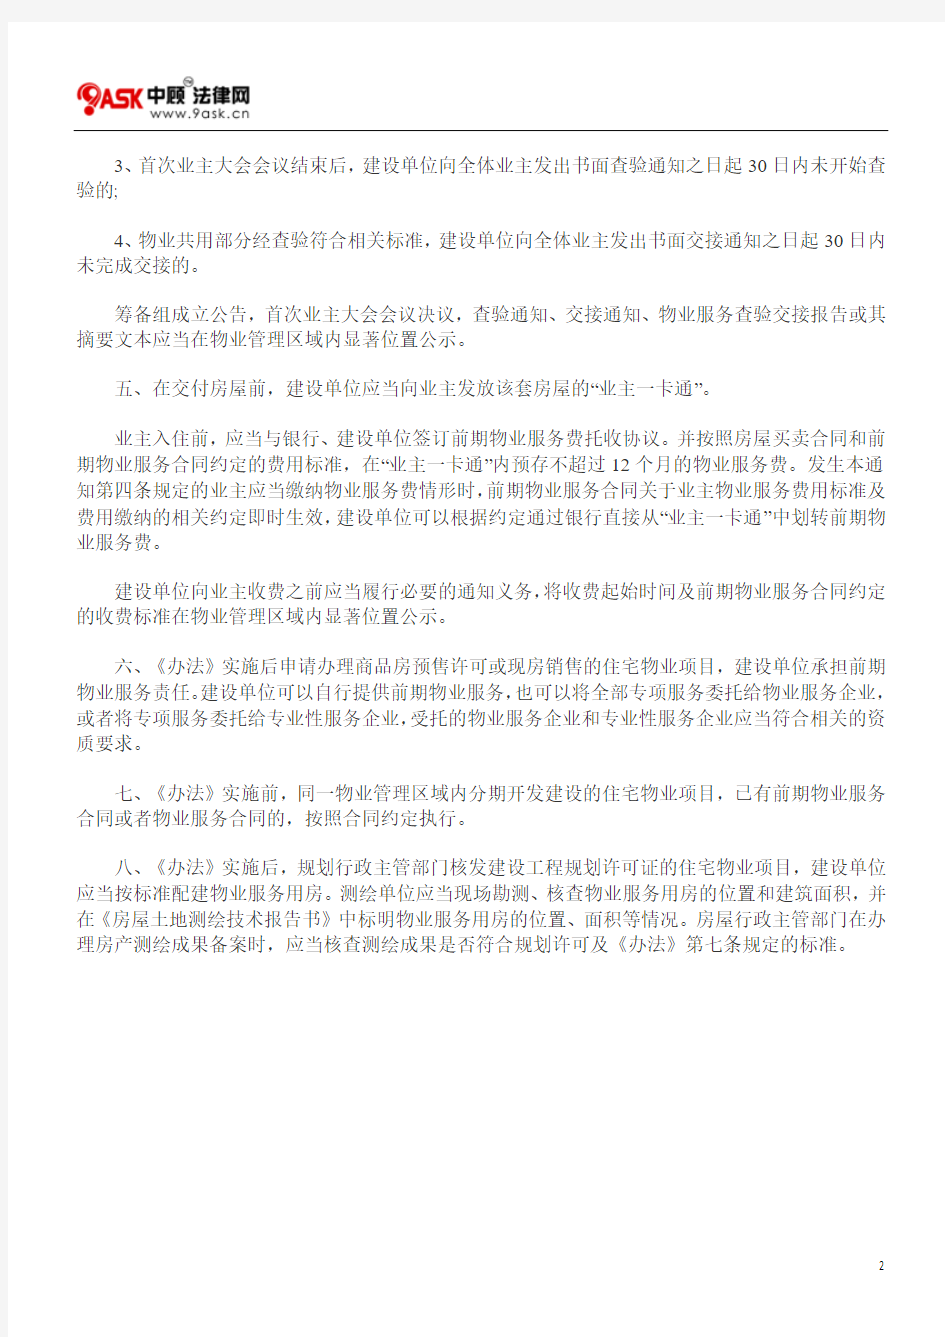 北京市住房和城乡建设委员会关于《北京市物业管理办法》实施中若干问题的通知